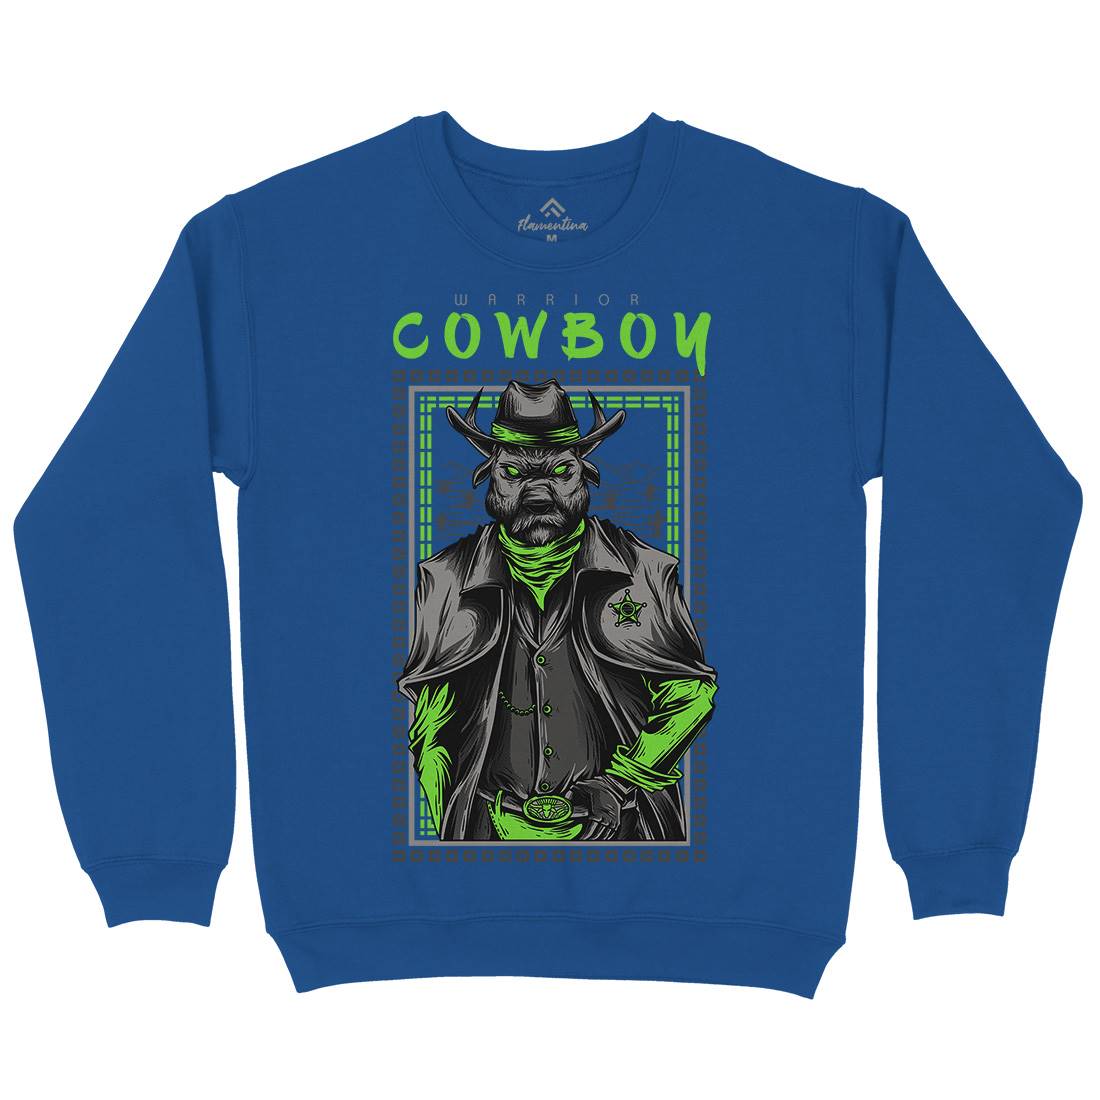 Cowboy Warrior Kids Crew Neck Sweatshirt American D735